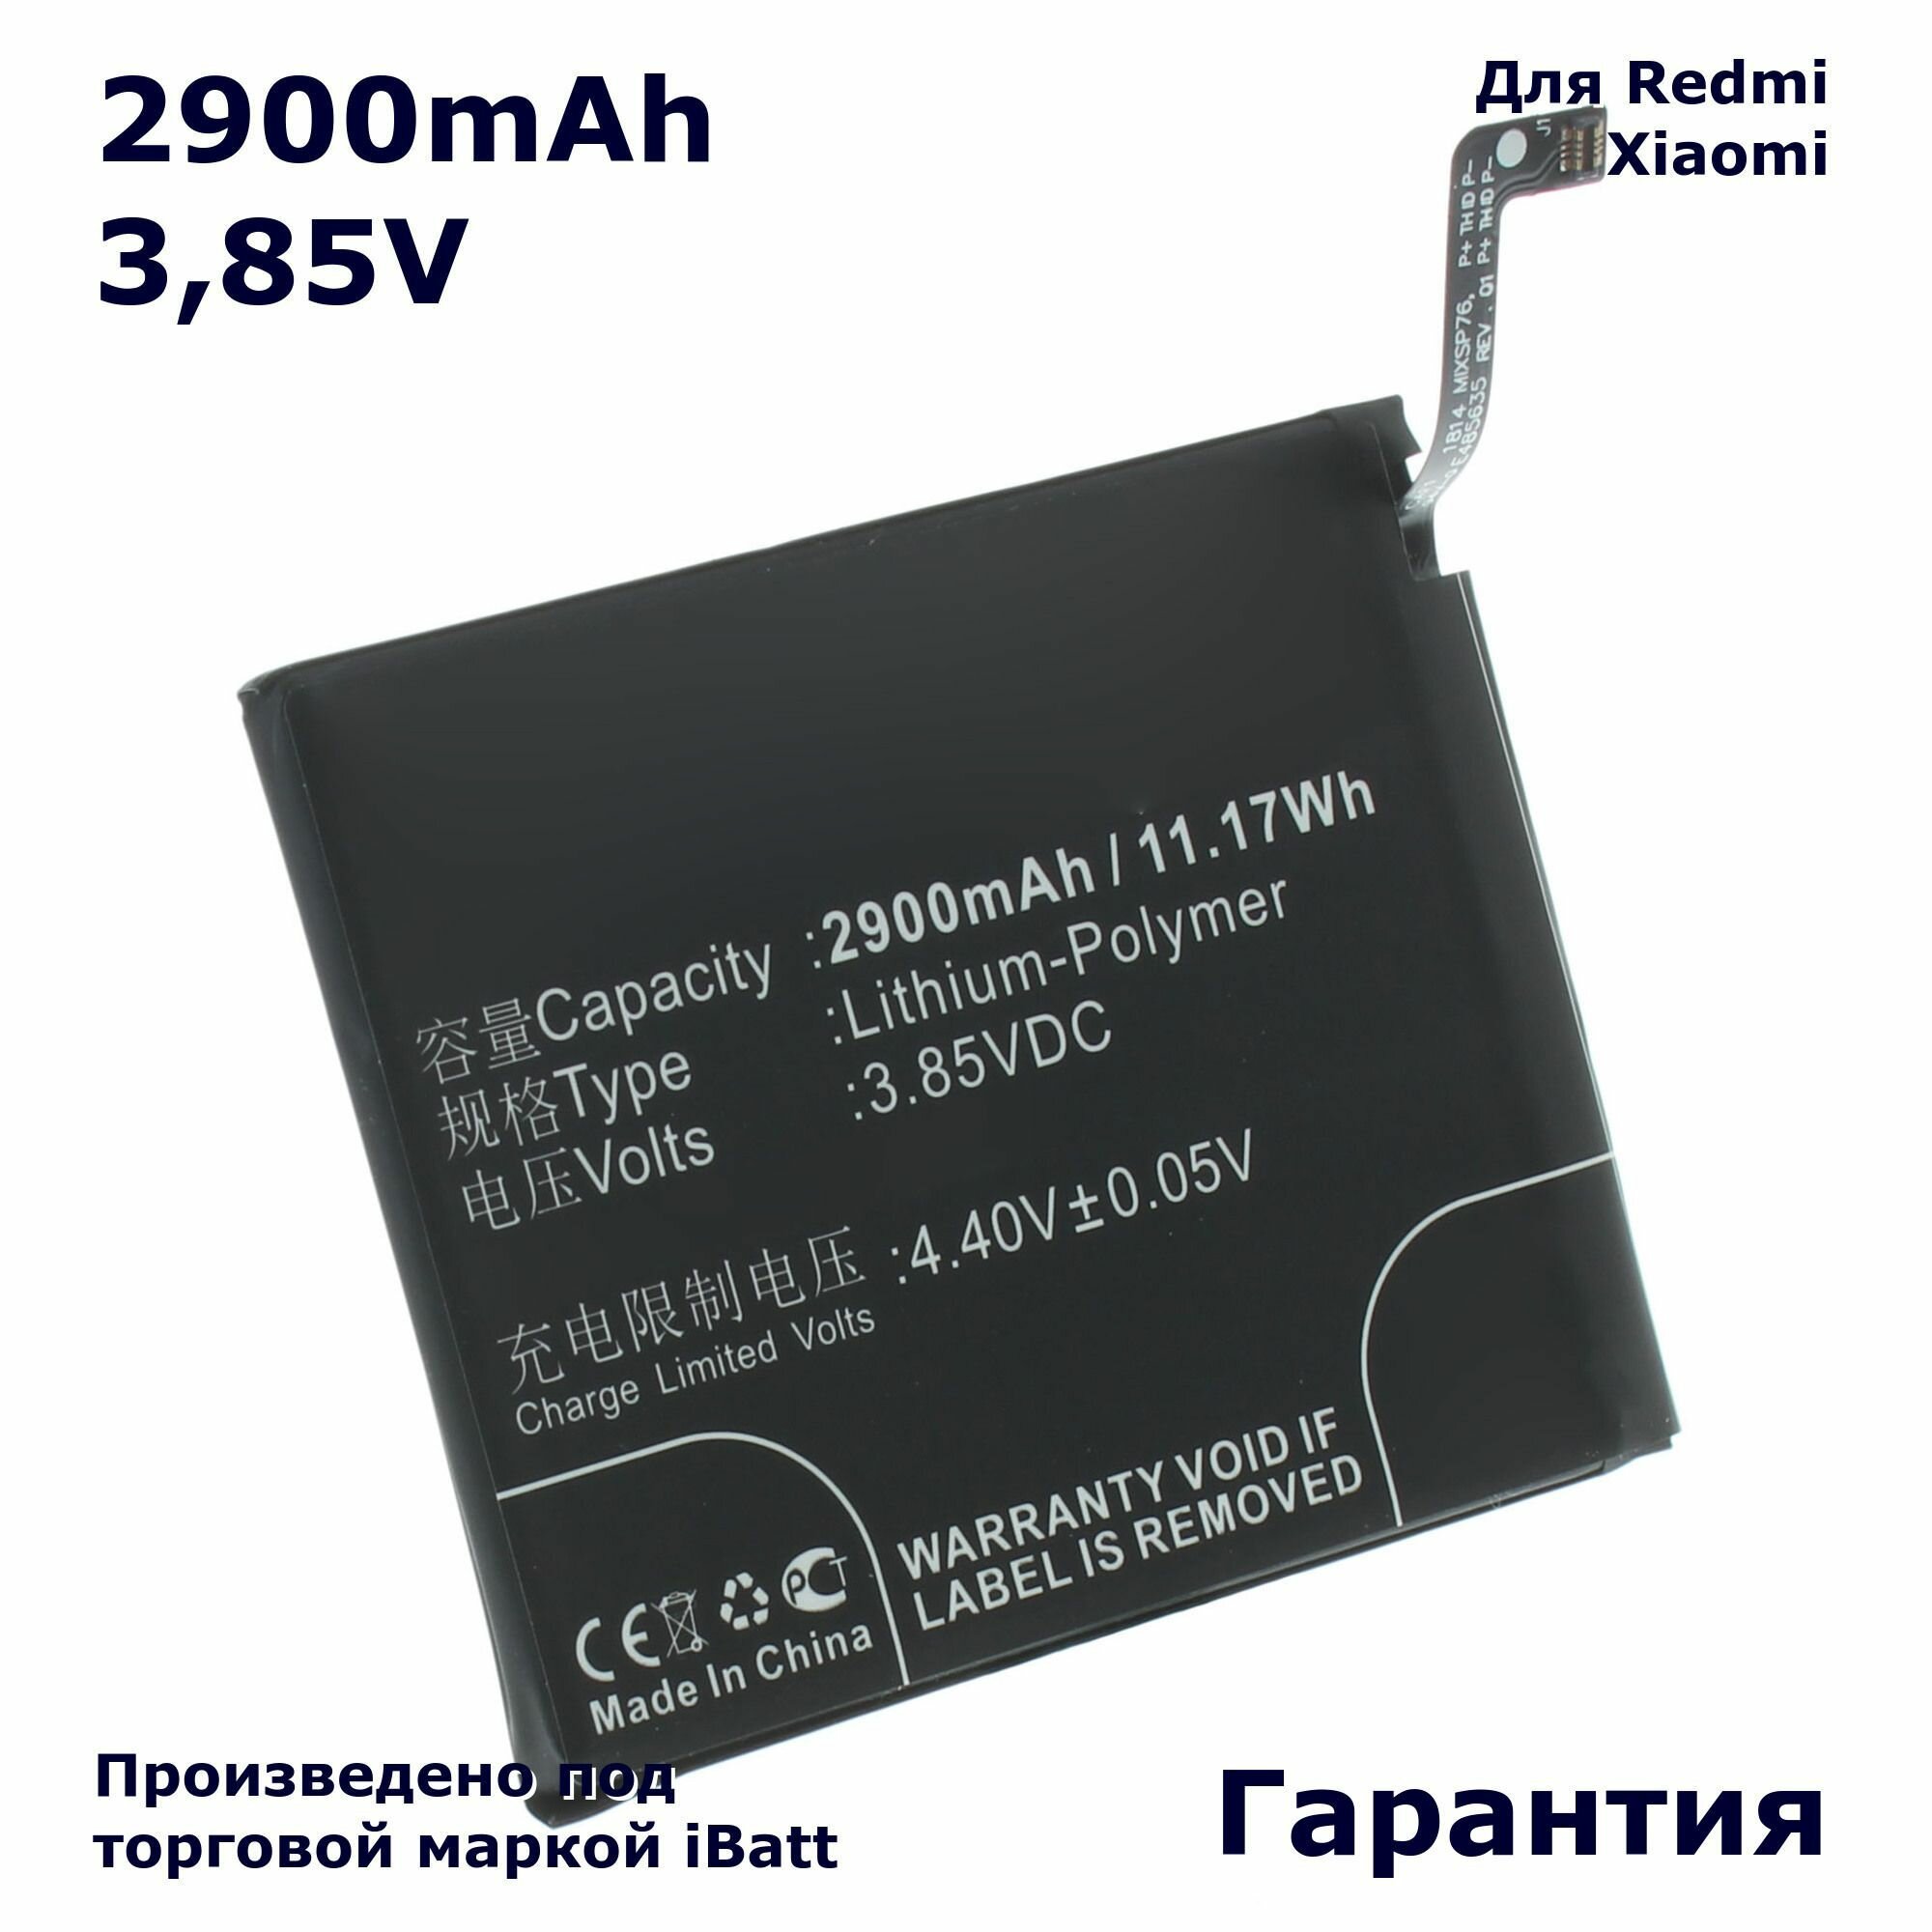 Аккумулятор iBatt 2900mAh 385V для Red BN37